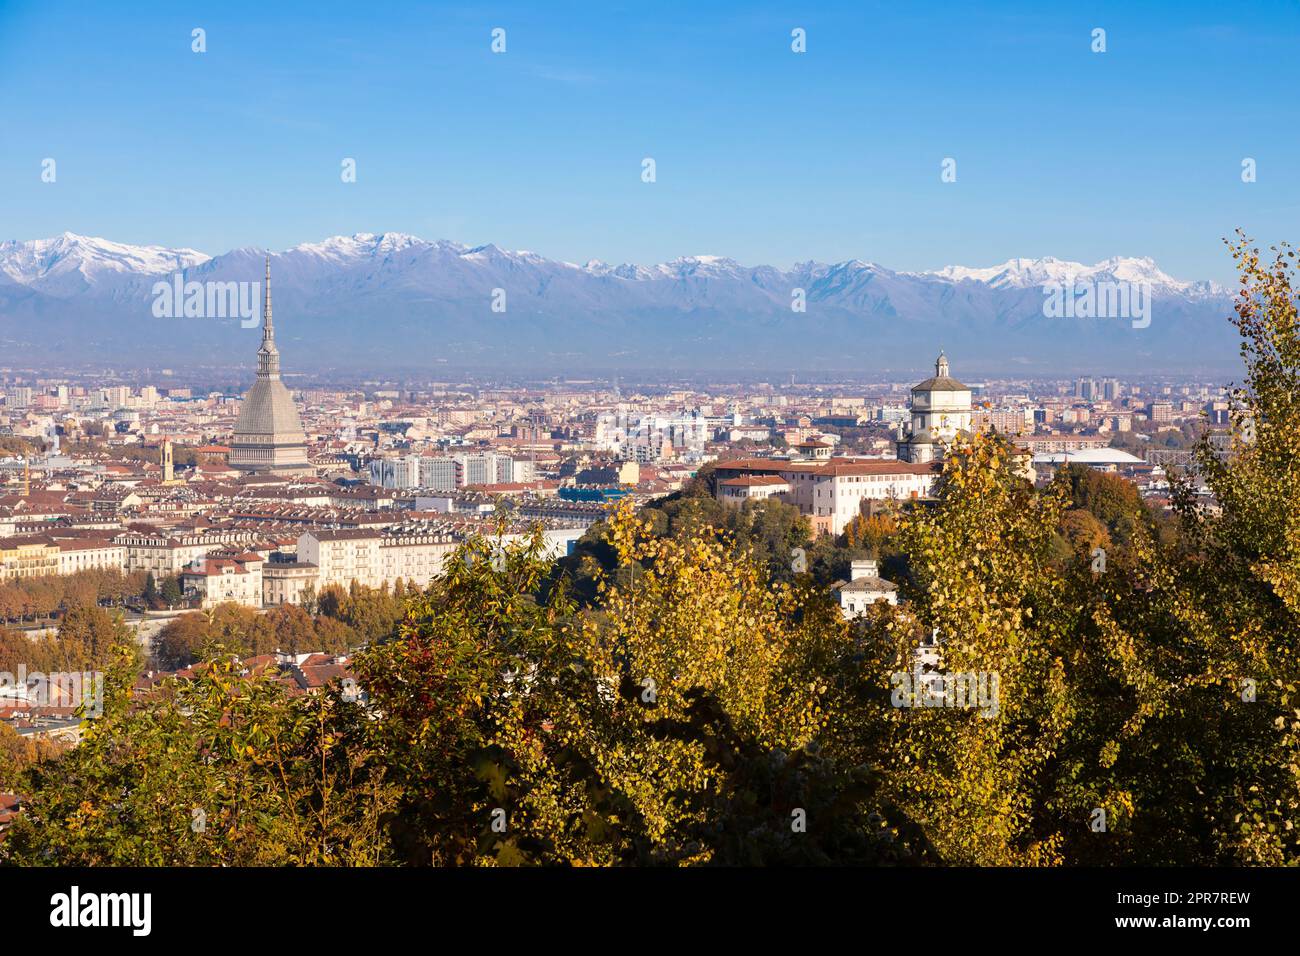 Turin Panorama mit Alpen und Mole Antonelliana, Italien. Skyline des Symbols der Piemont-Region mit Monte dei Cappuccini - Cappuccinis Hügel. Sonnenaufgangslicht, Herbst Stockfoto